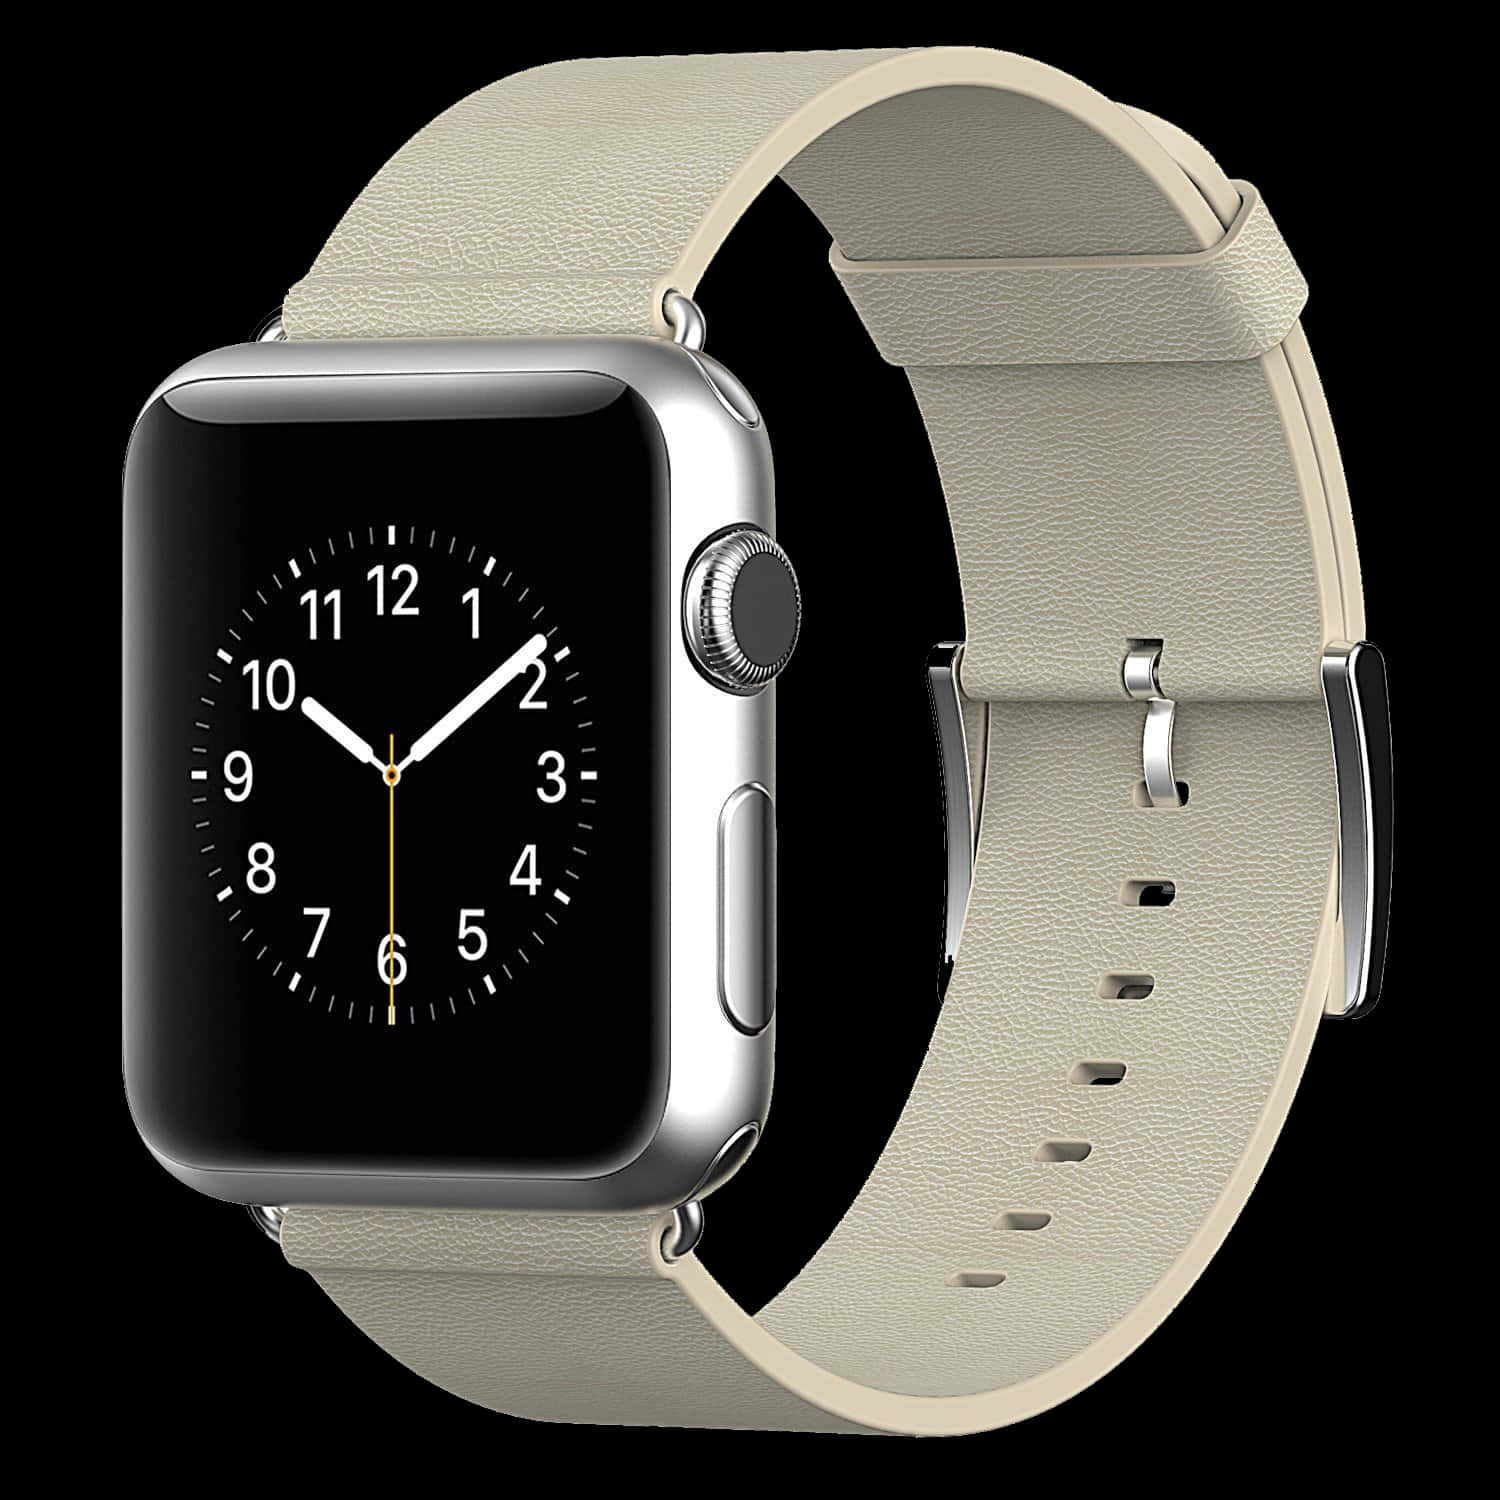 Fiqueà Frente Da Tendência Com O Apple Watch, O Dispositivo Vestível Mais Inovador Do Mundo.